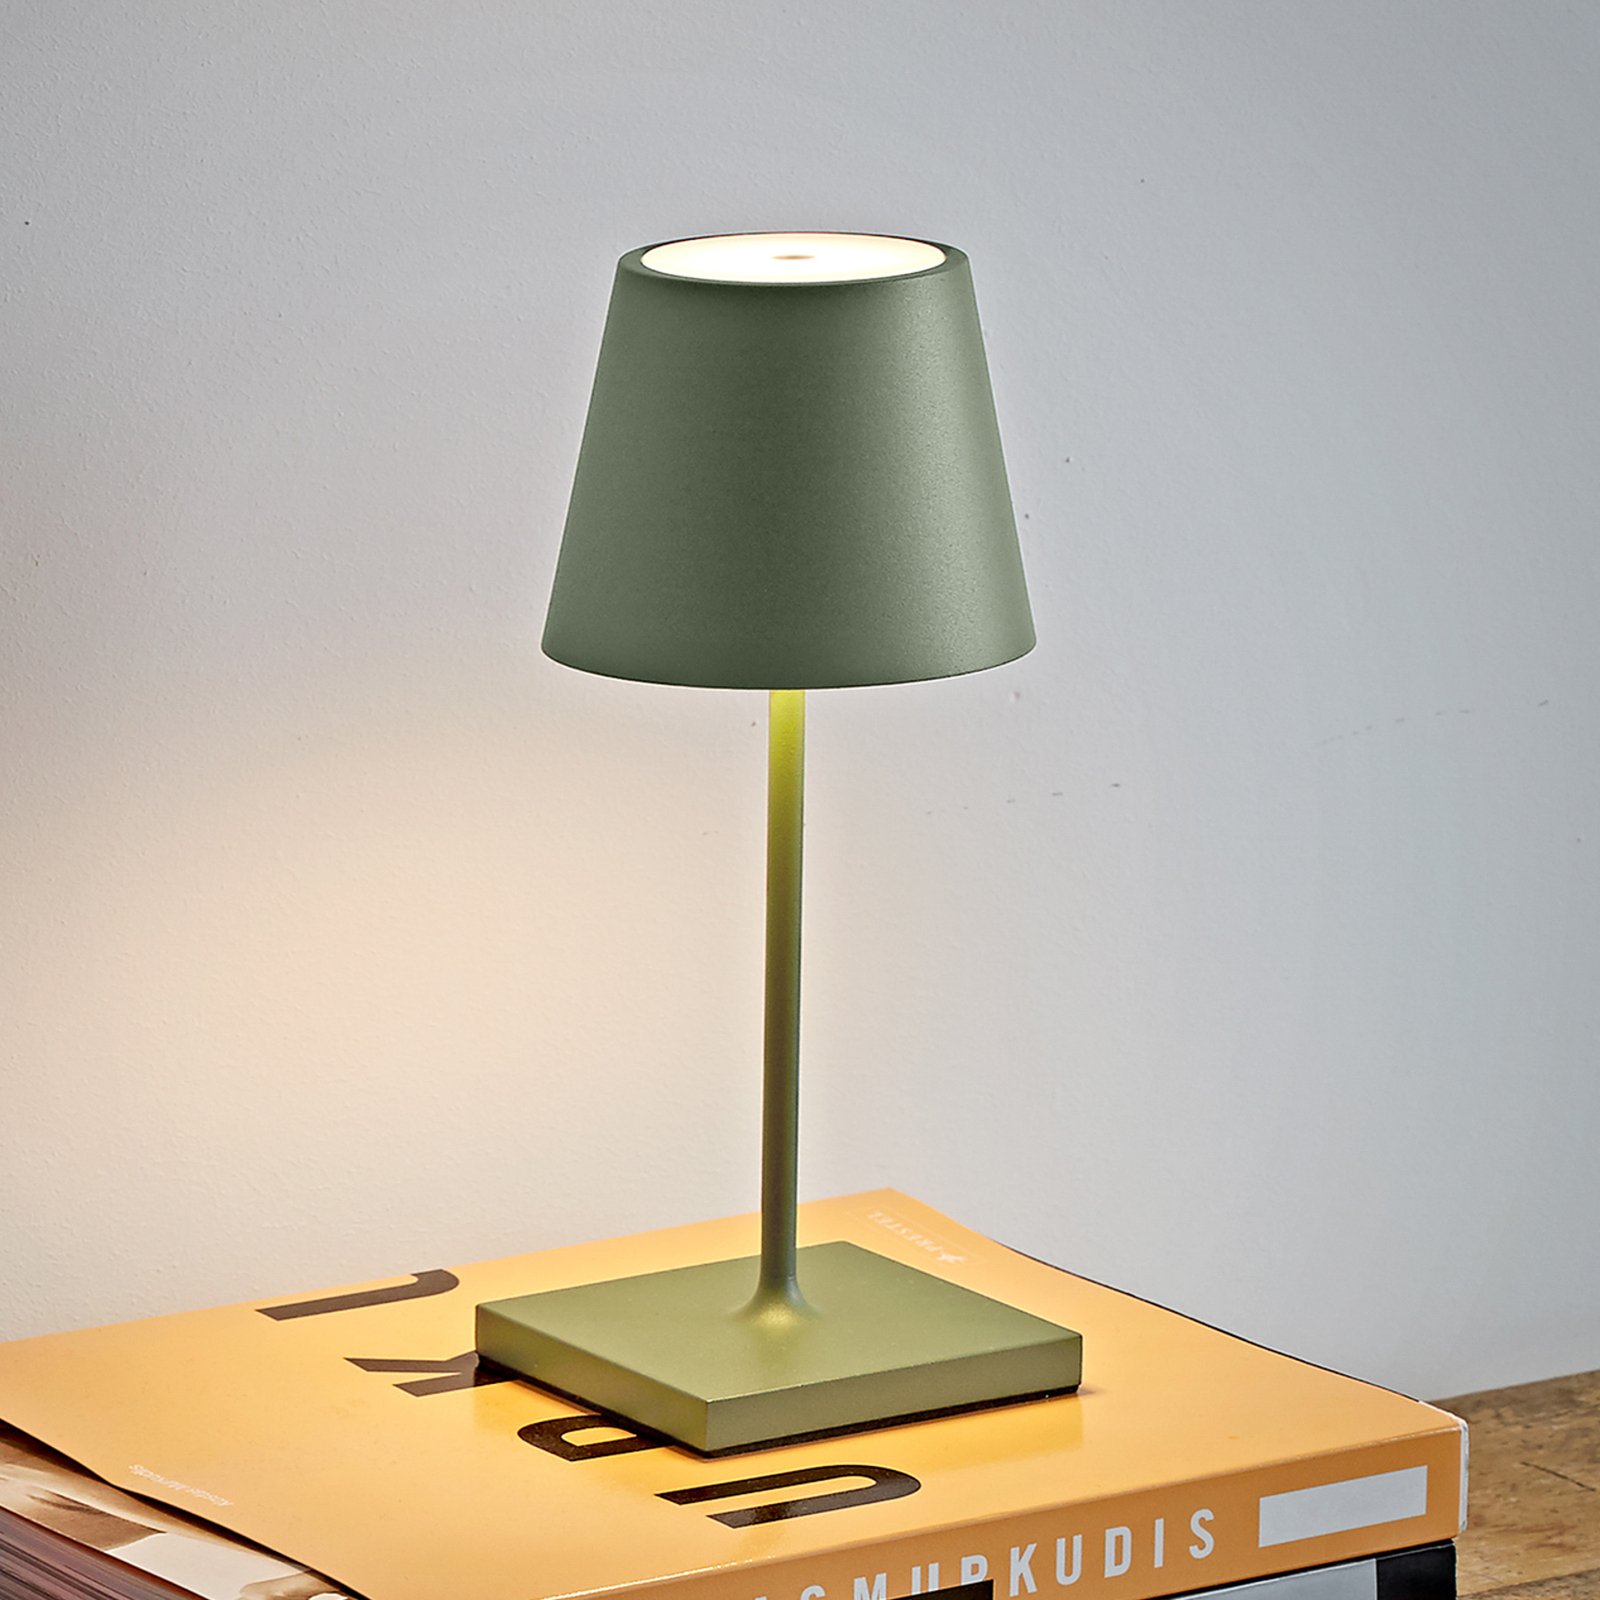 Lampe de table LED rechargeable Nuindie mini, ronde, USB-C, vert sauge